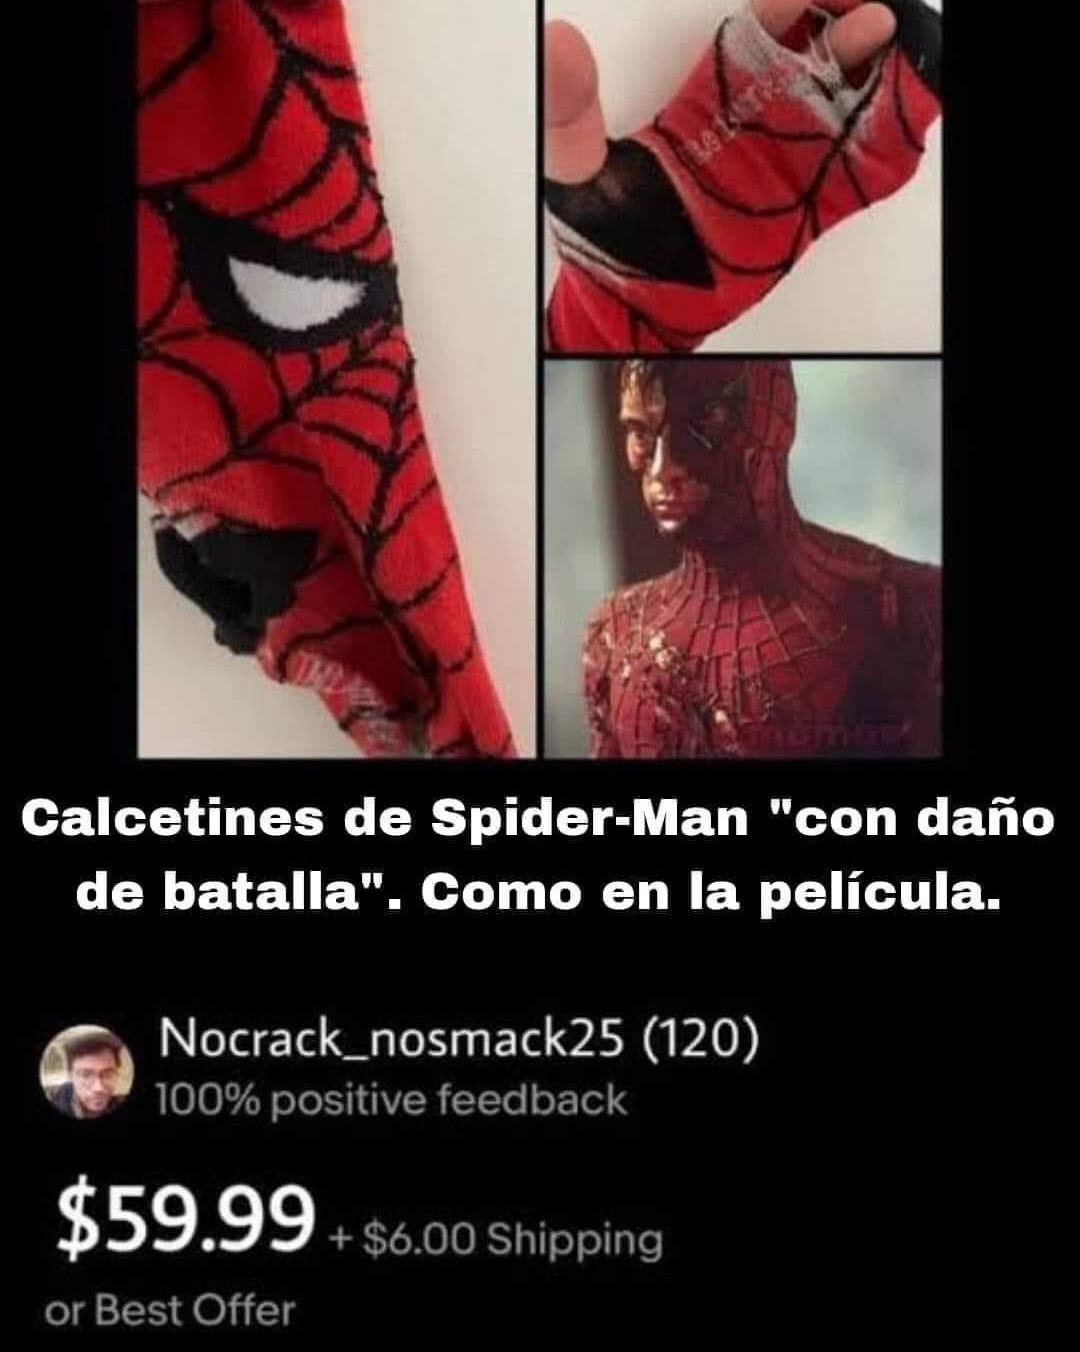 Calcetines de Spiderman cannon - meme